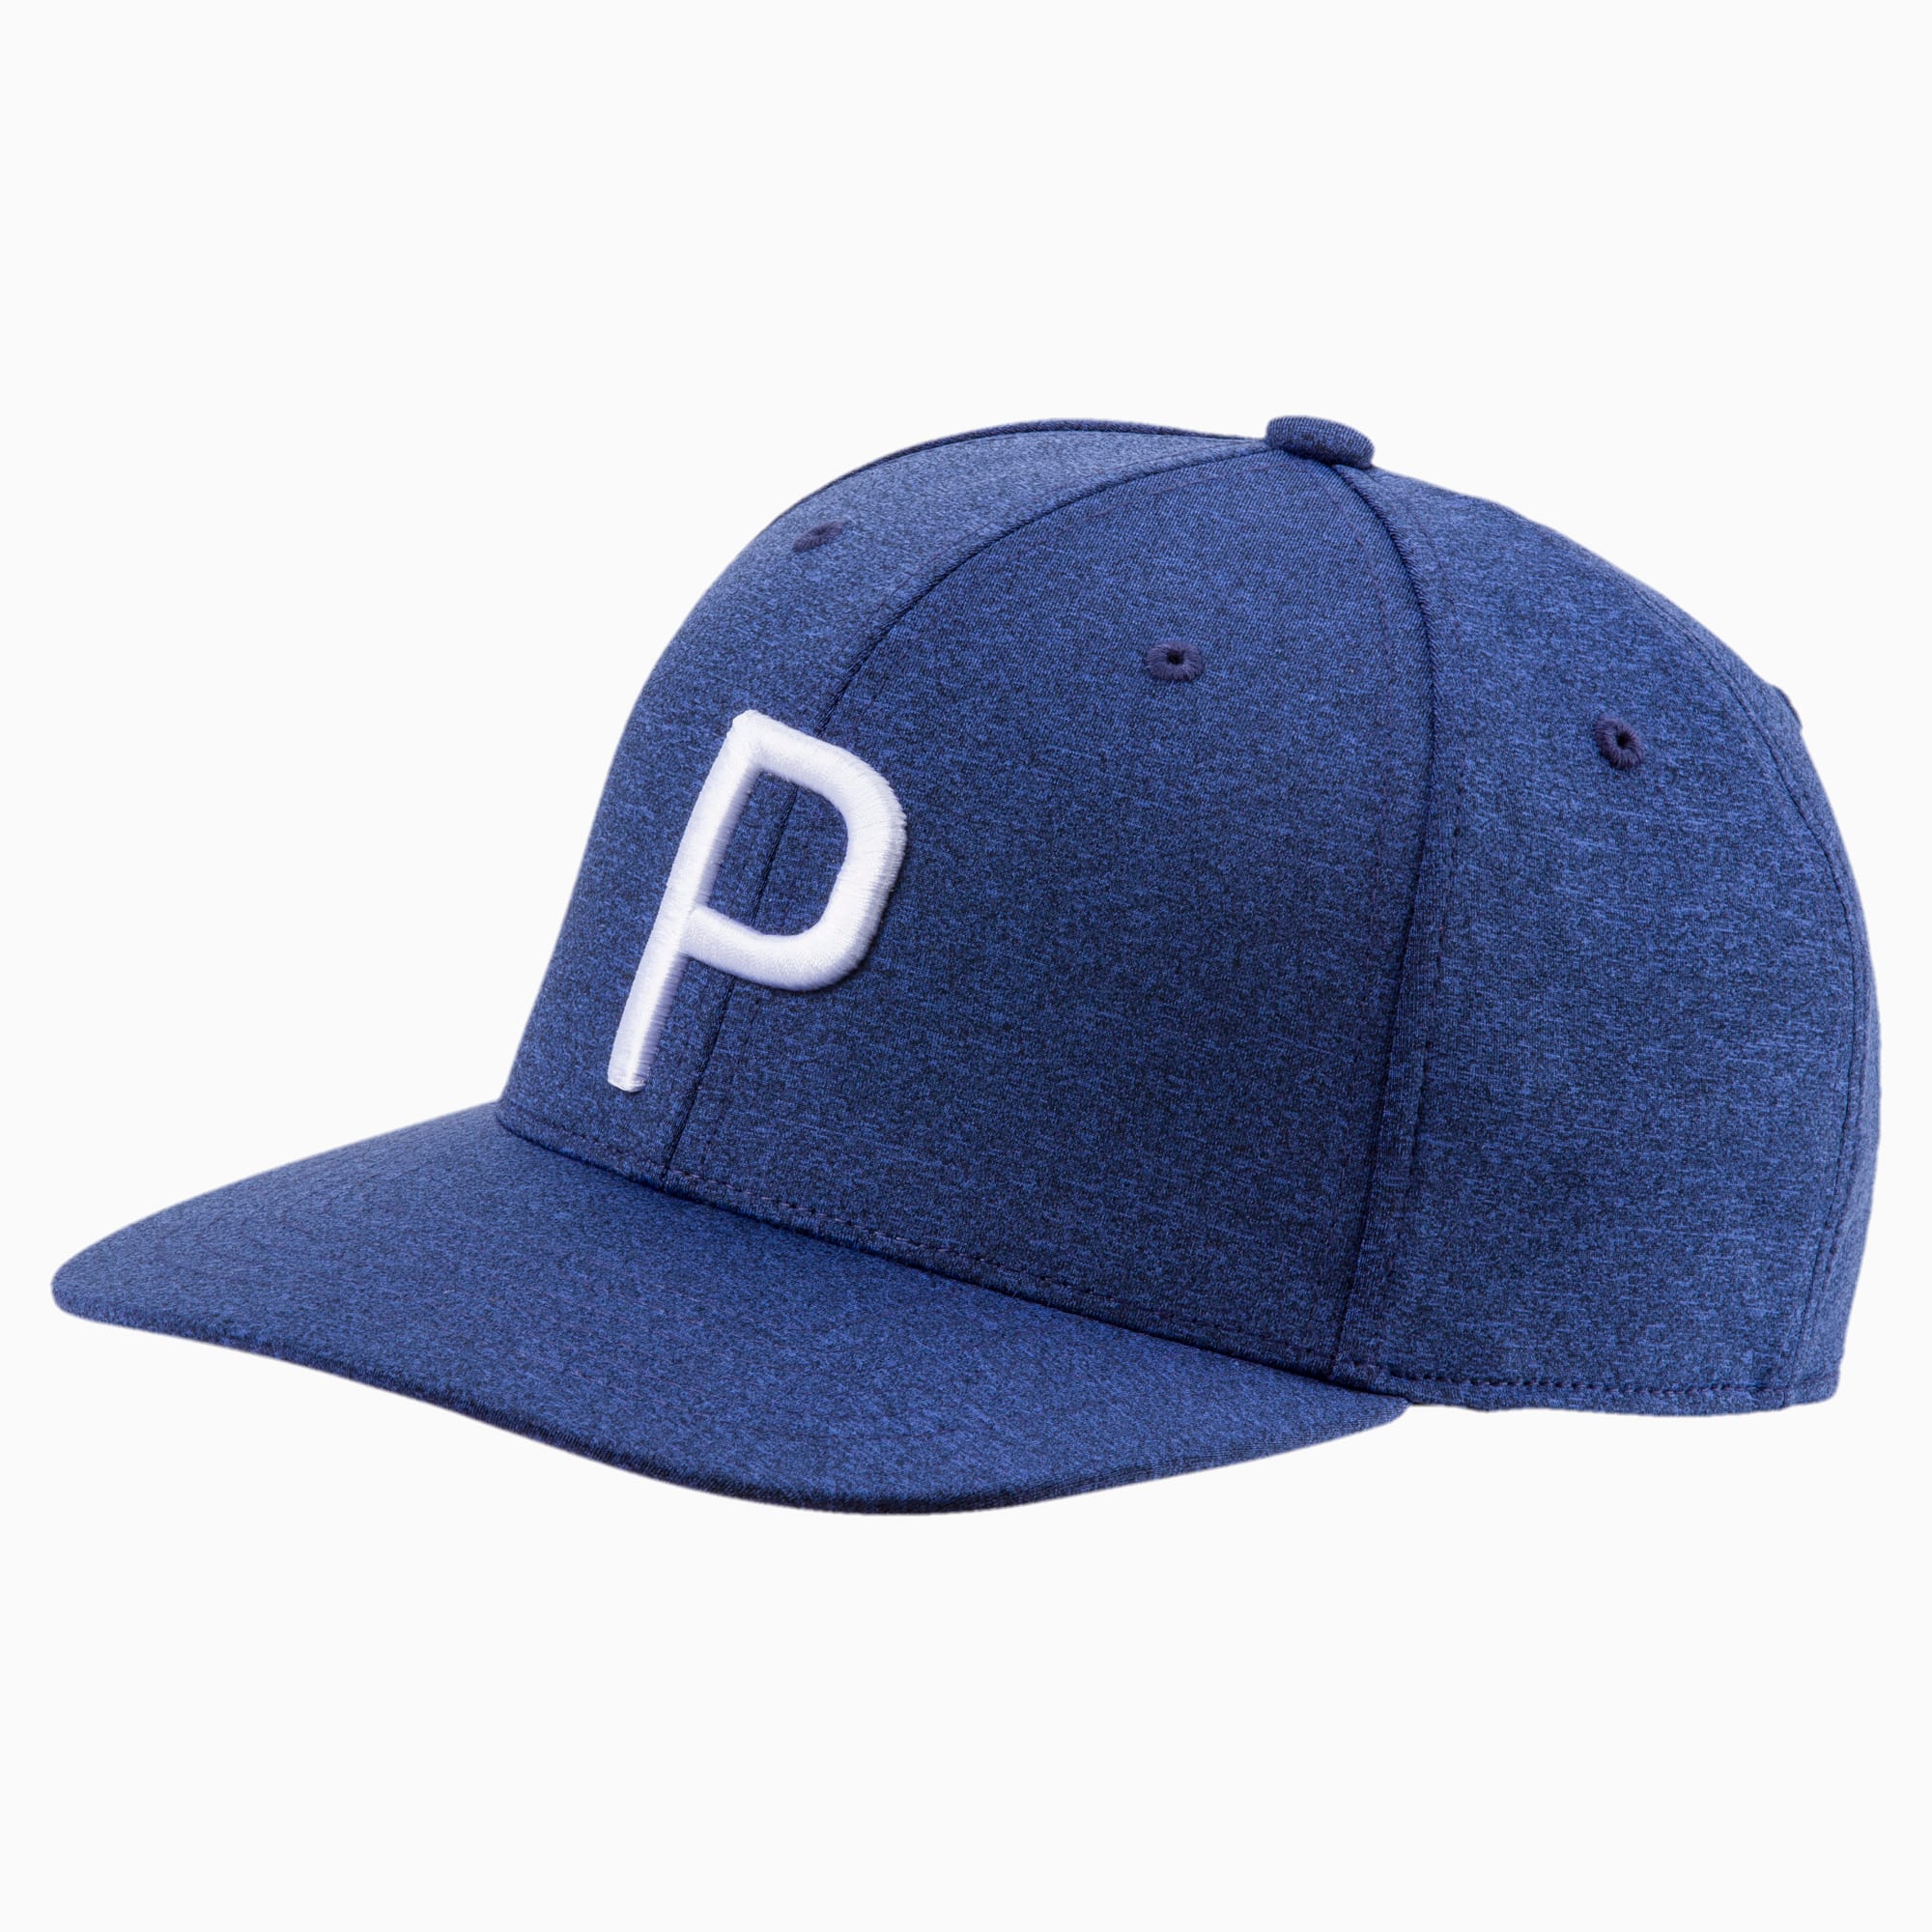 P Snapback Hat | PUMA US